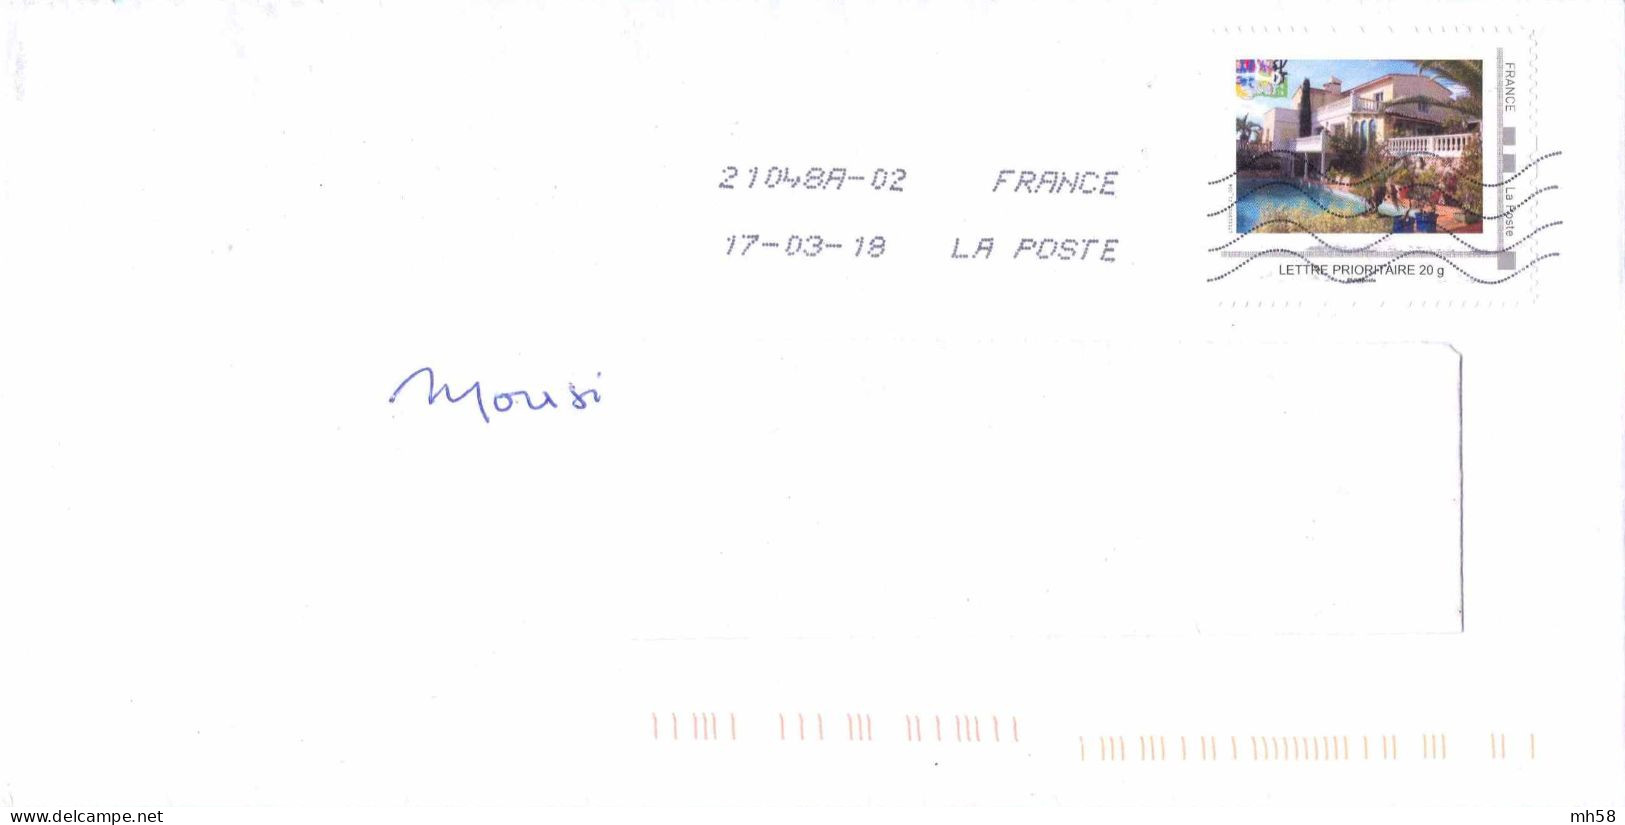 FRANCE - MonTimbraMoi Villa Avec Piscine Sur Enveloppe De 2018 - Lettre Prioritaire 20g - Lettres & Documents